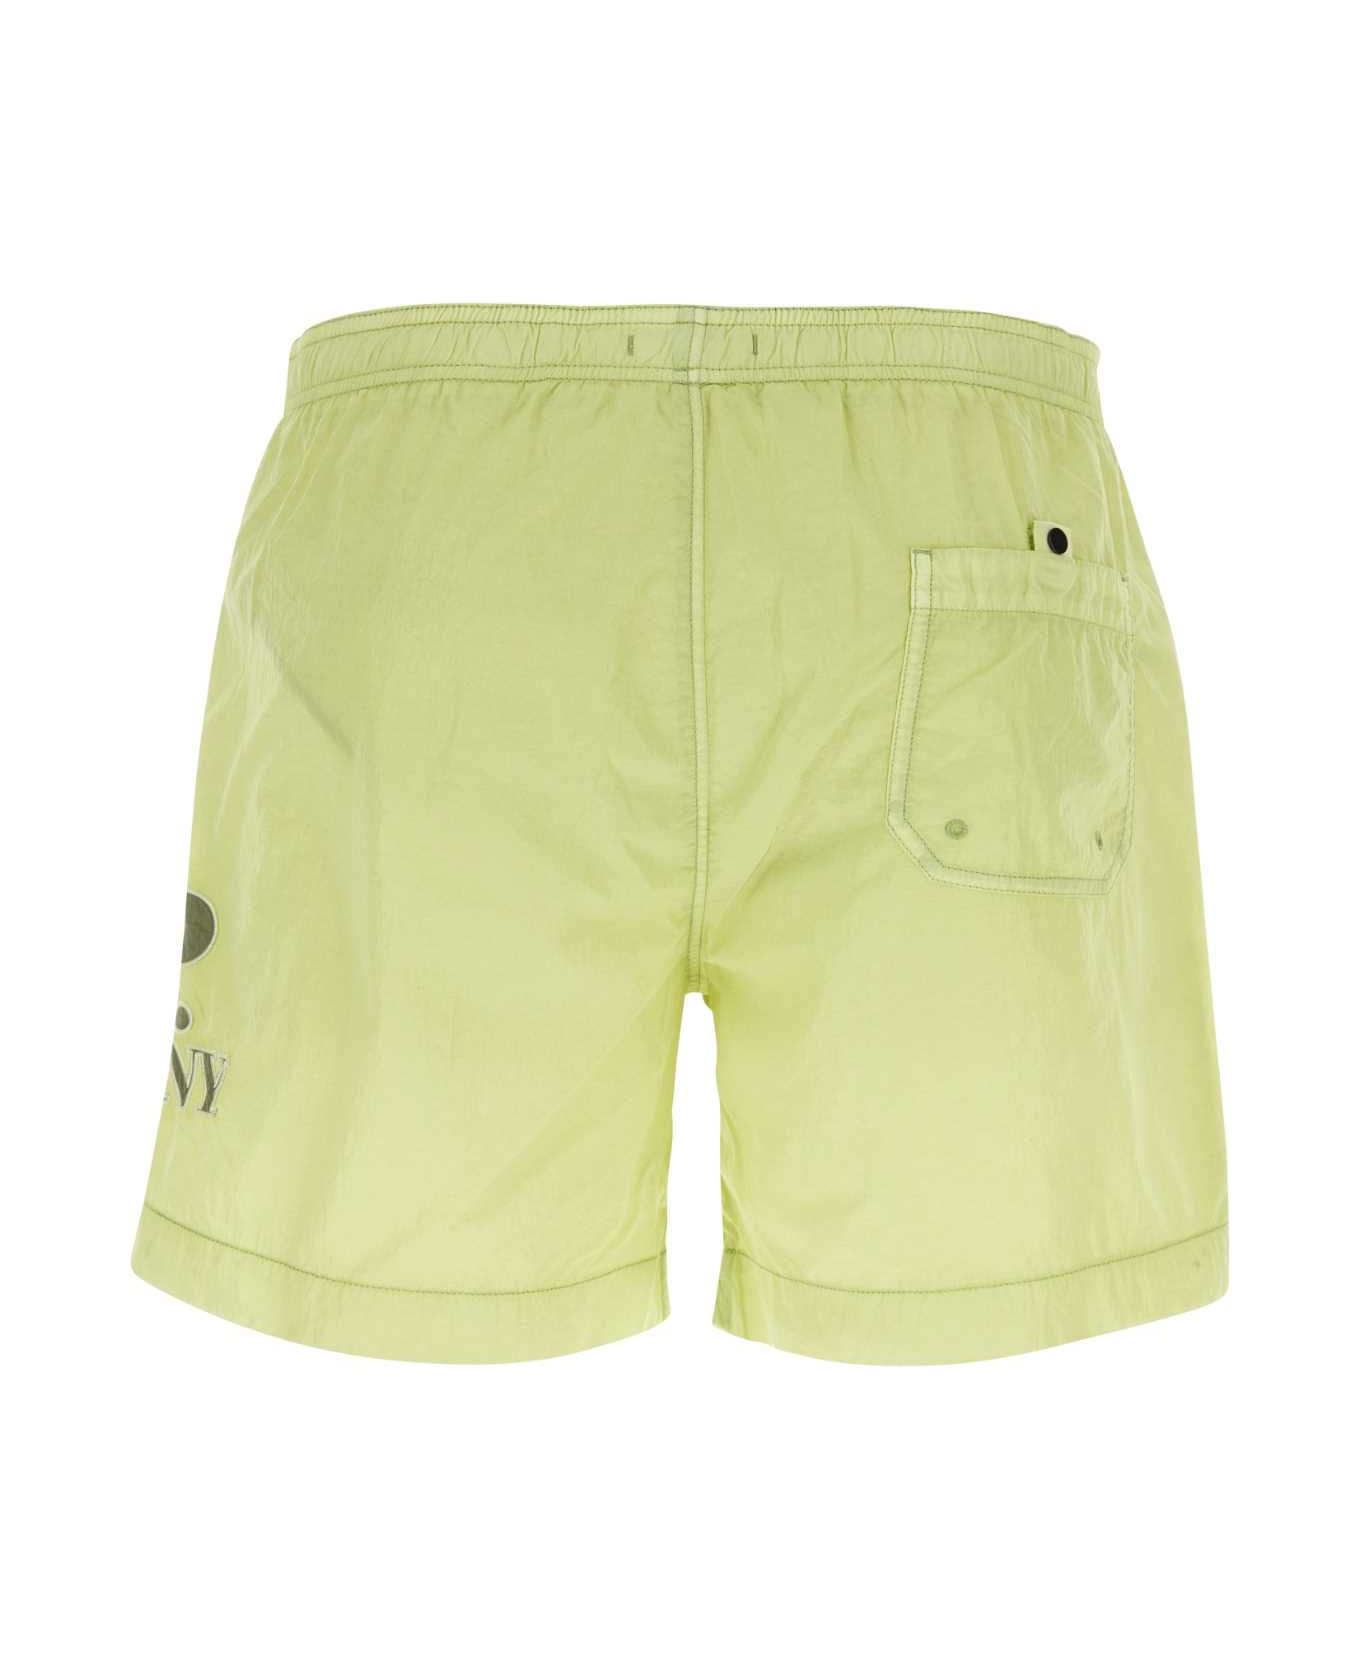 C.P. Company Lime Green Nylon Swimming Shorts - WHITEPEAR